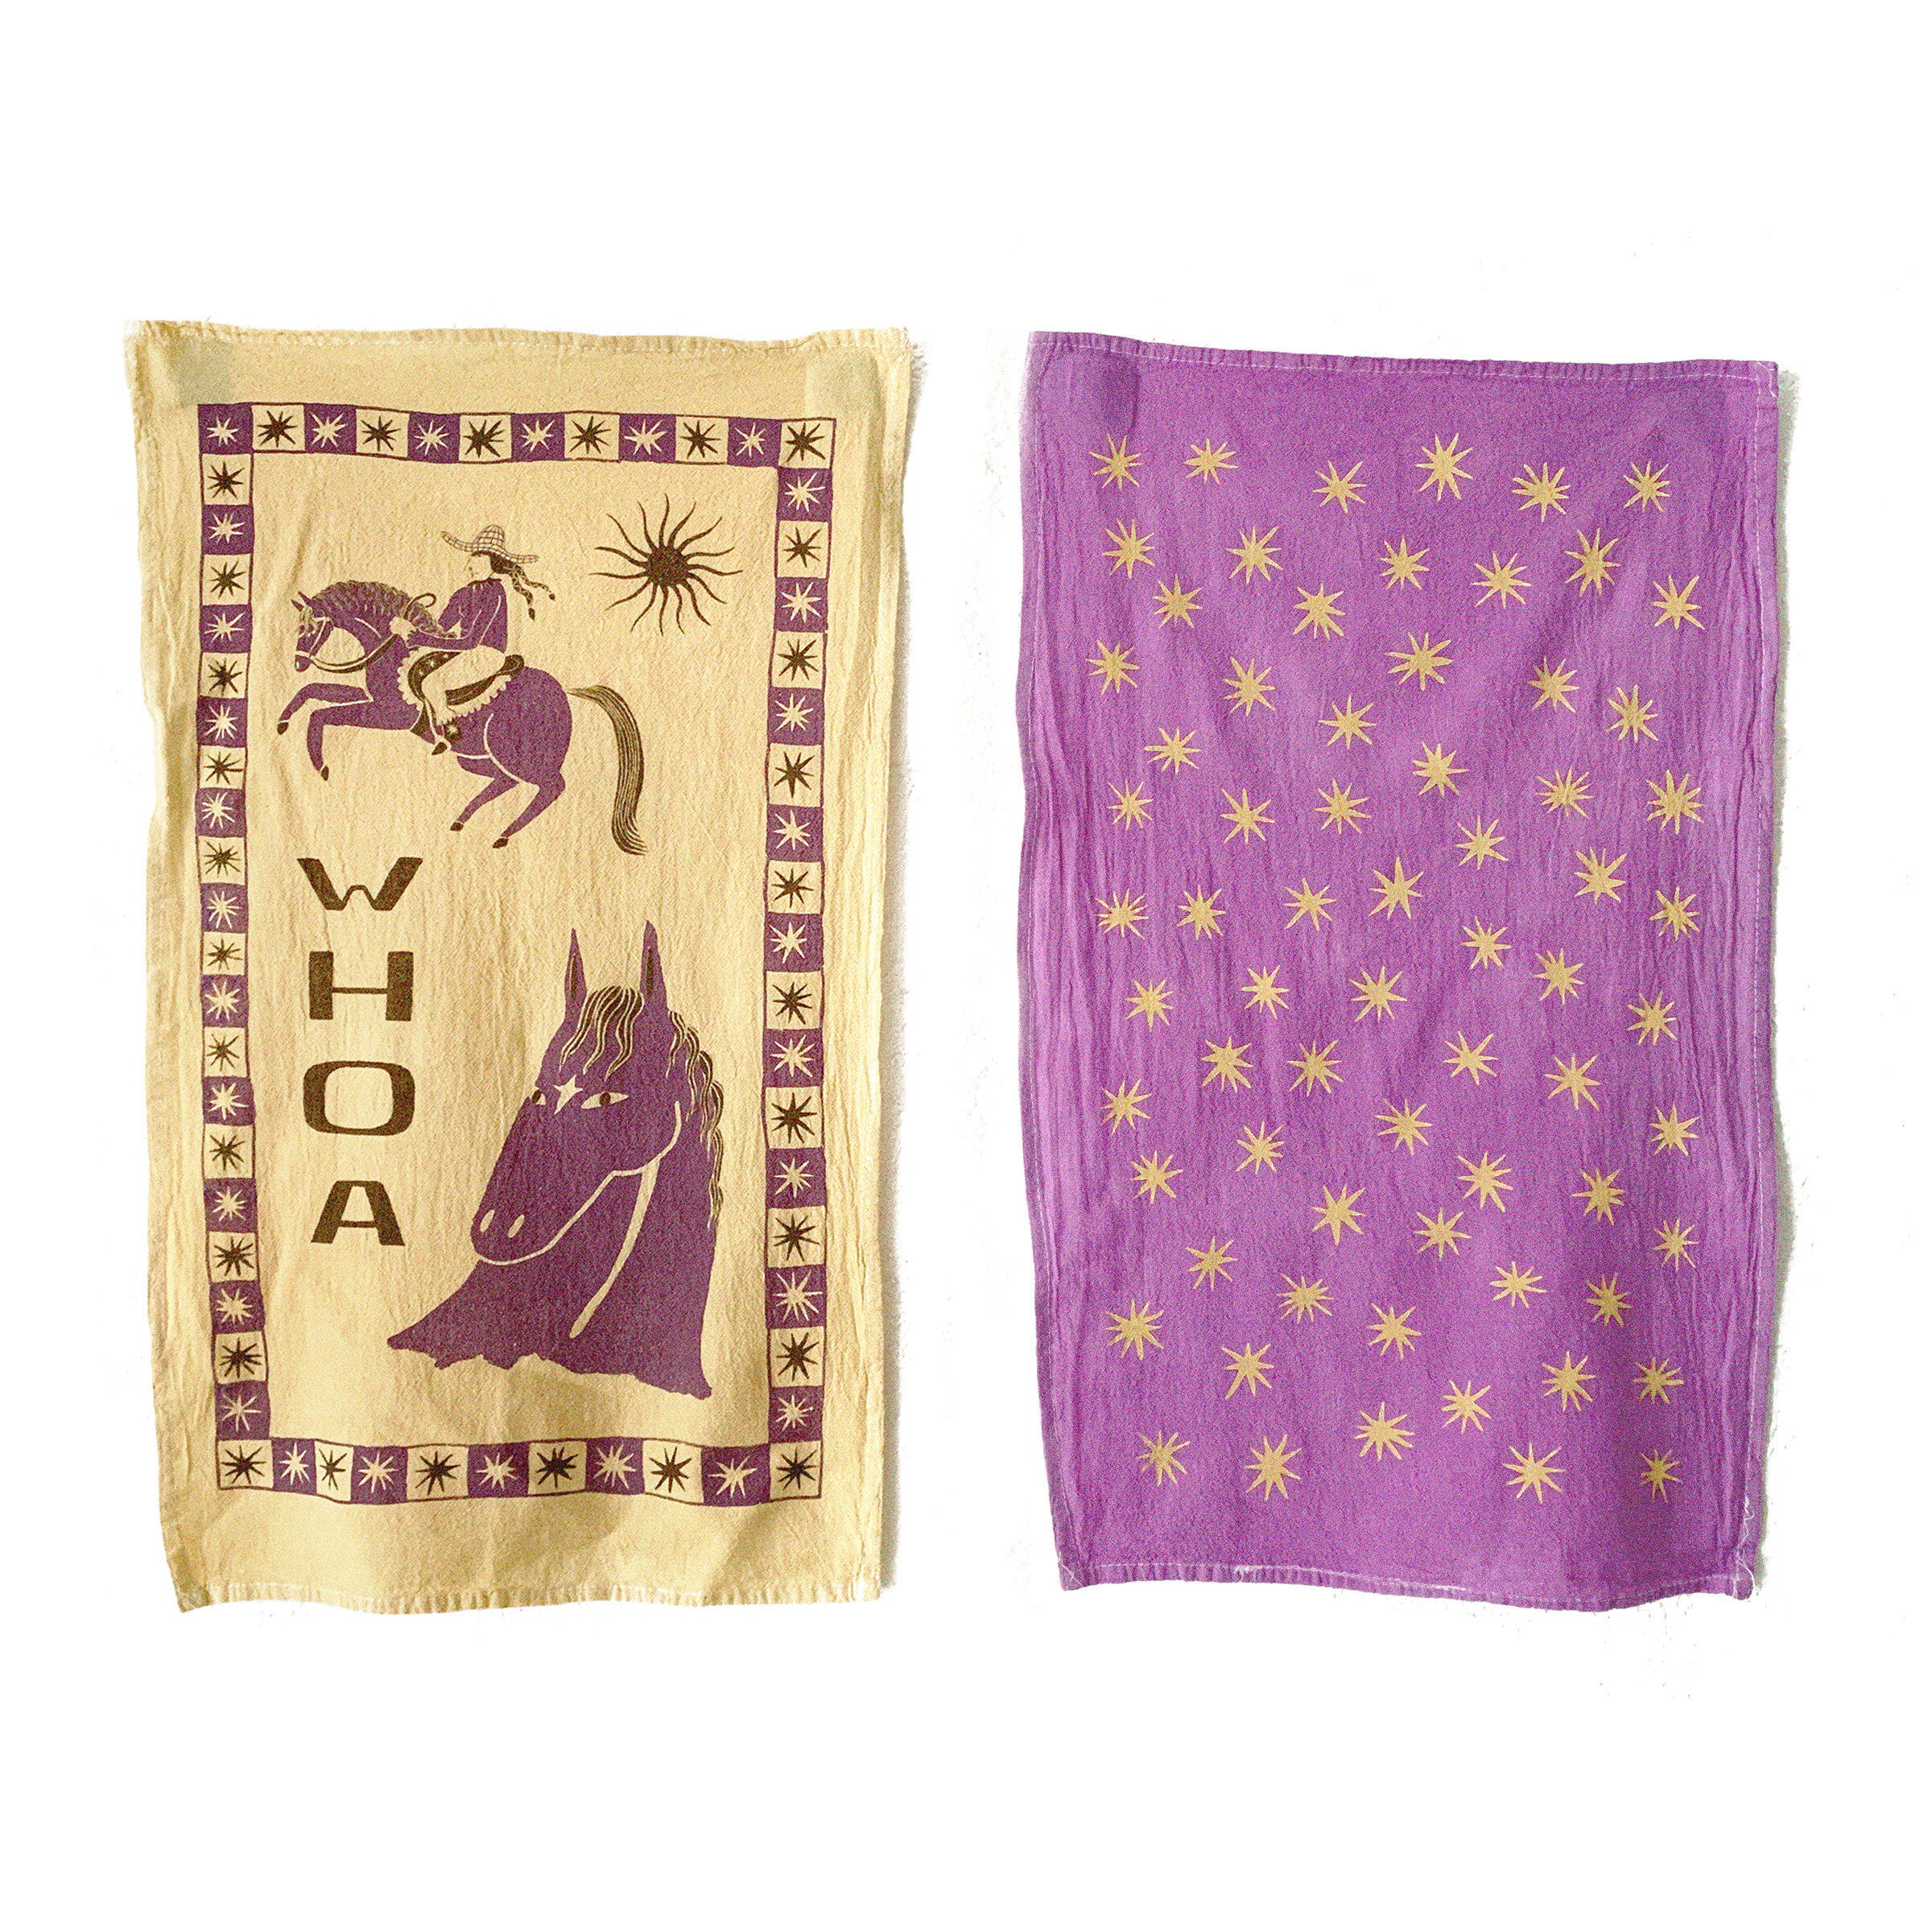 Tea Towels from Ponderosa Press – Hama Hama Oyster Company